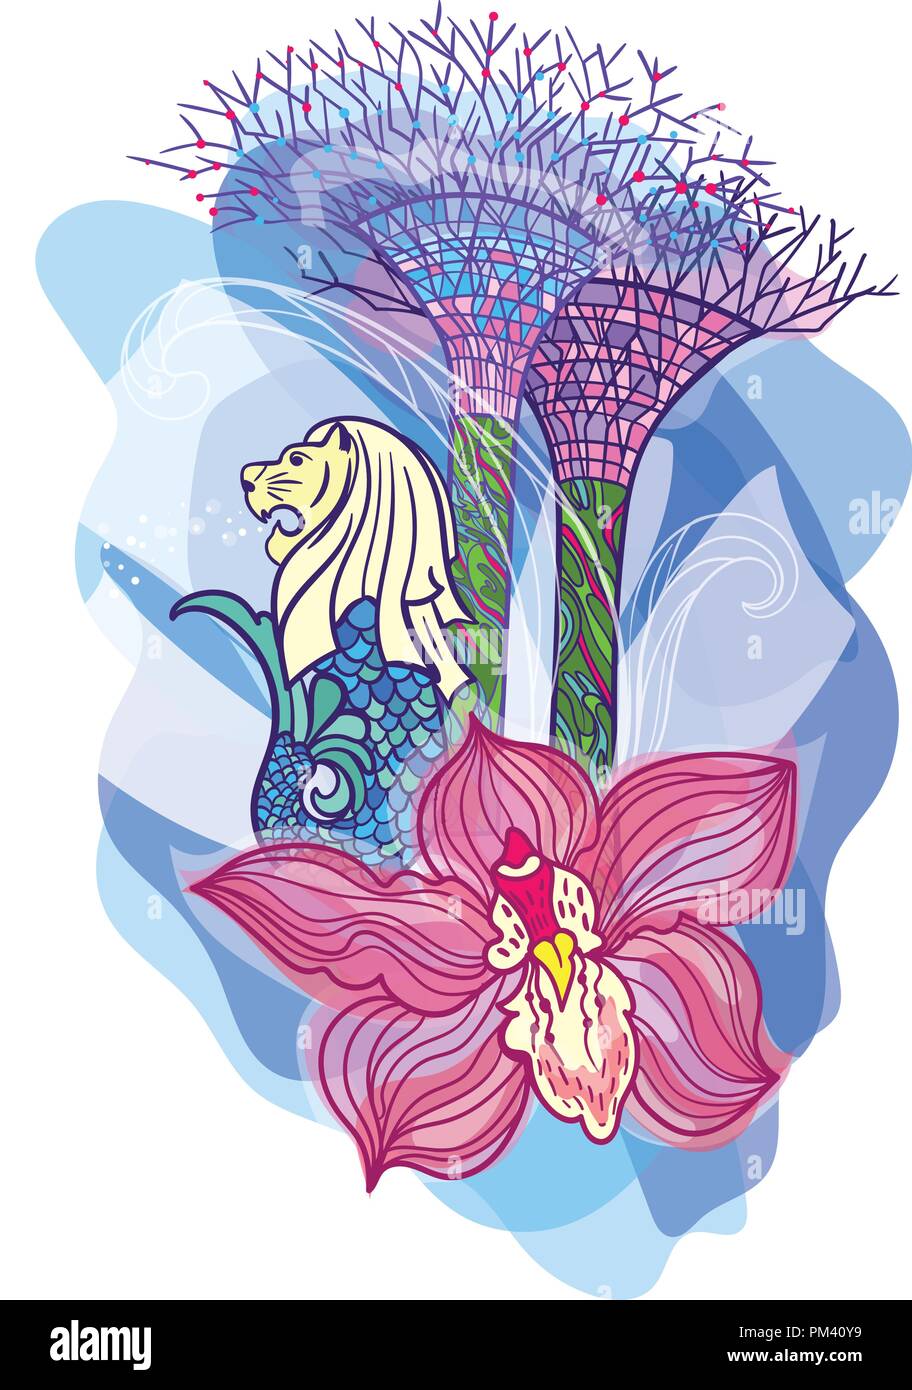 Imprimer avec orchidée, fleur, Merlion et jardins au bord de la Bay, sur fond bleu transparent Illustration de Vecteur